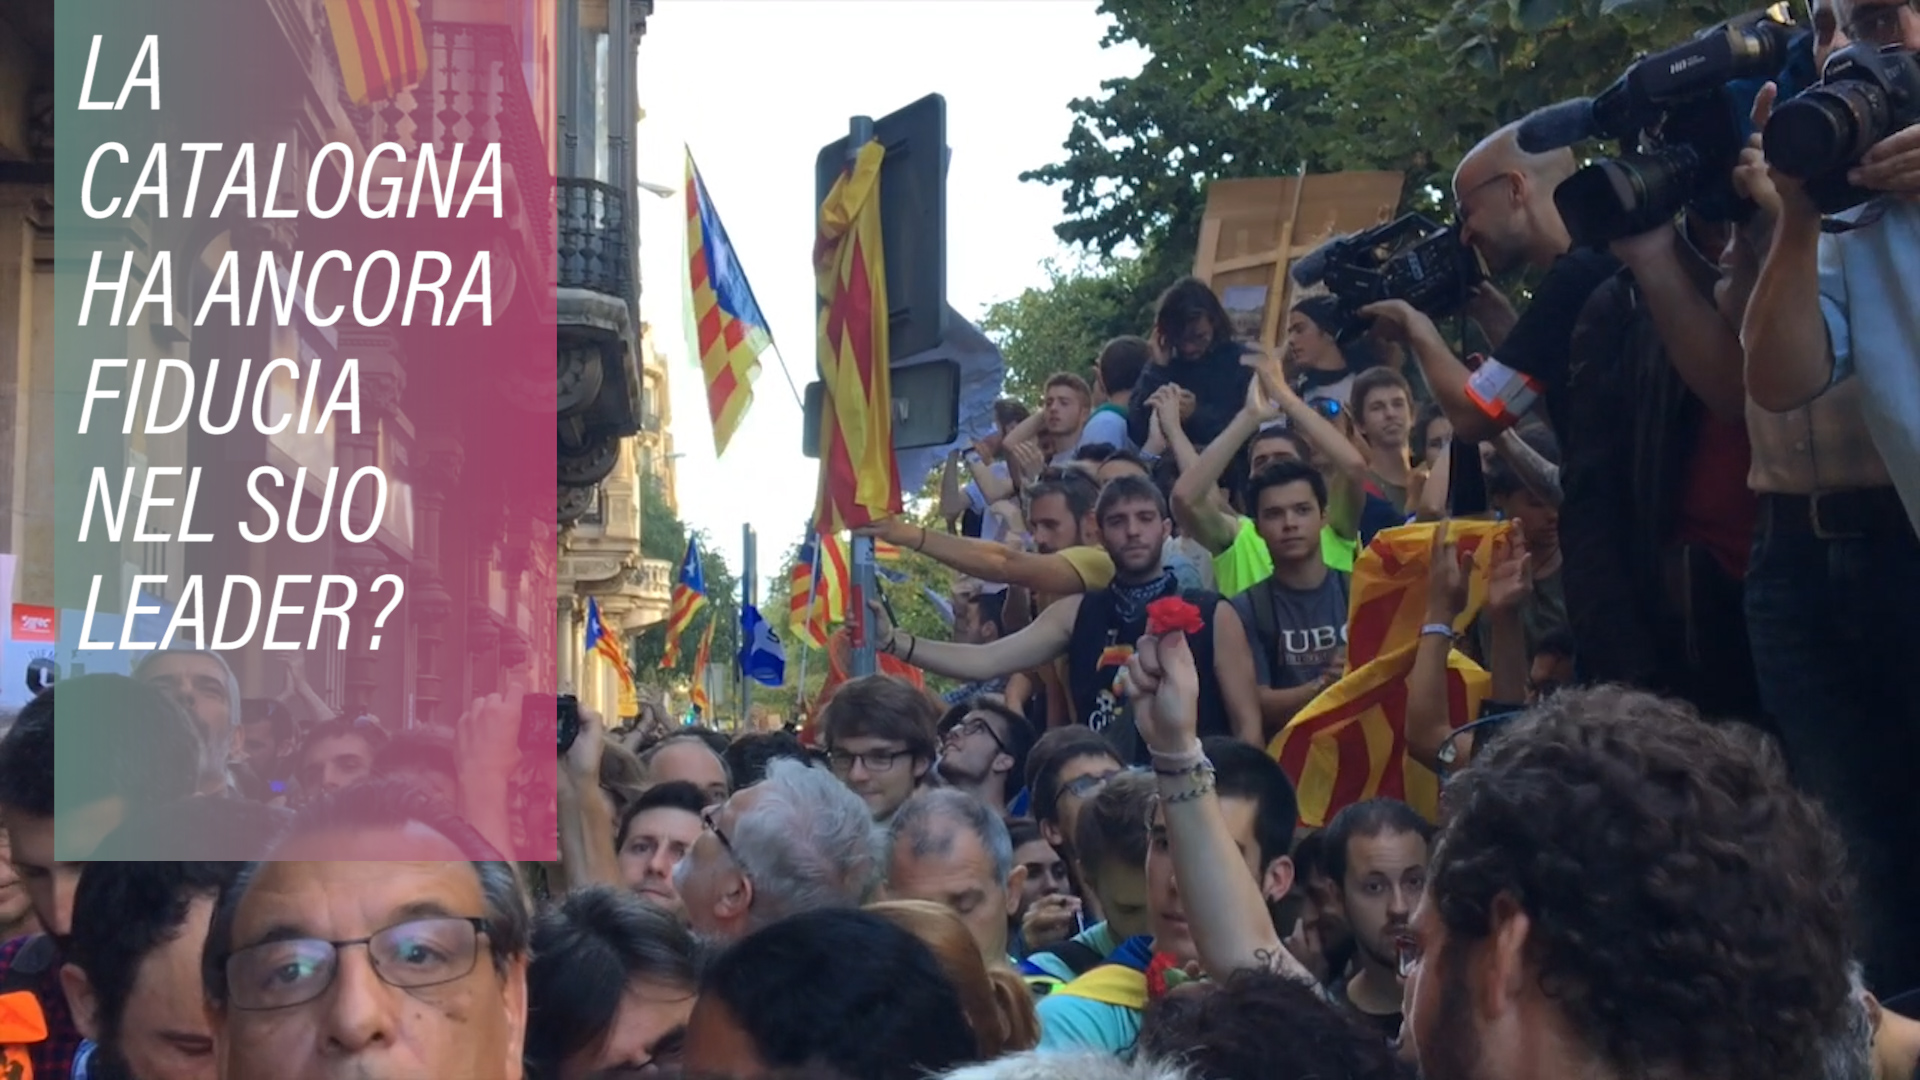 Puidgemont a Bruxelles: come reagiscono i catalani?